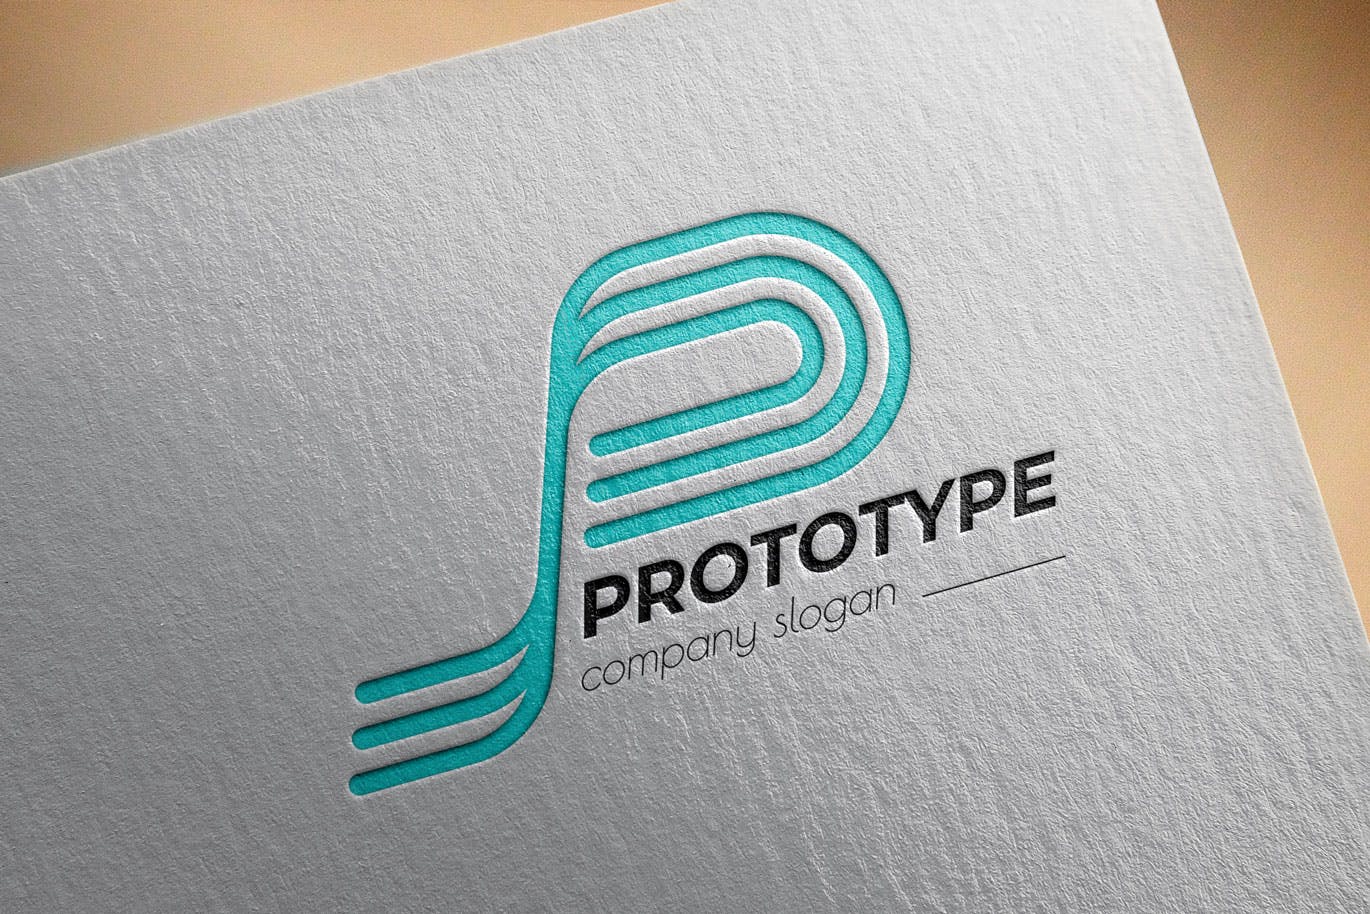 原型设计主题创意图形Logo设计非凡图库精选模板 Prototype Creative Logo Template插图(2)